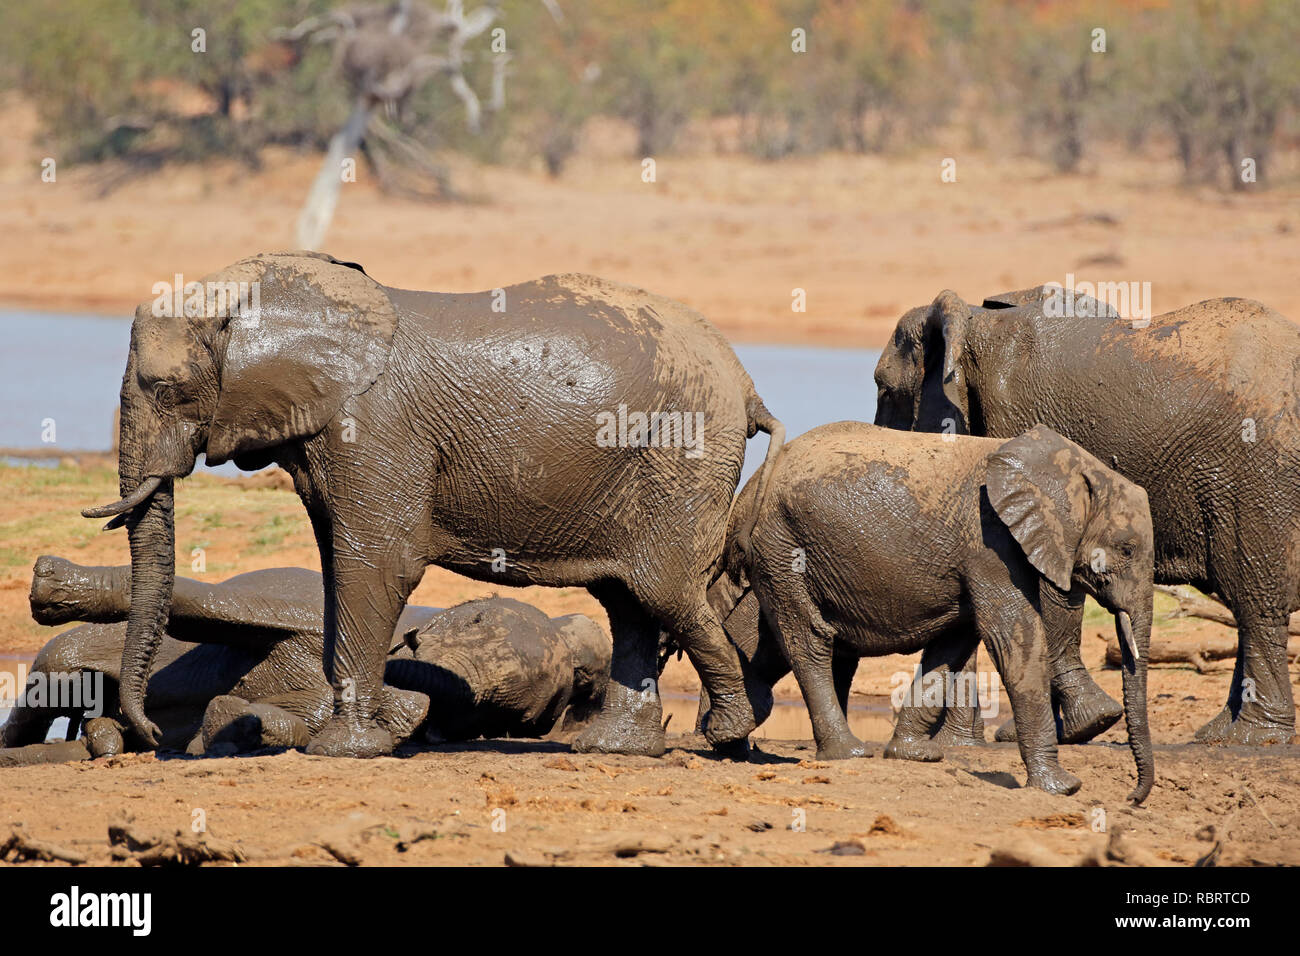 Les éléphants d'Afrique (Loxodonta africana) à un étang, Kruger National Park, Afrique du Sud Banque D'Images